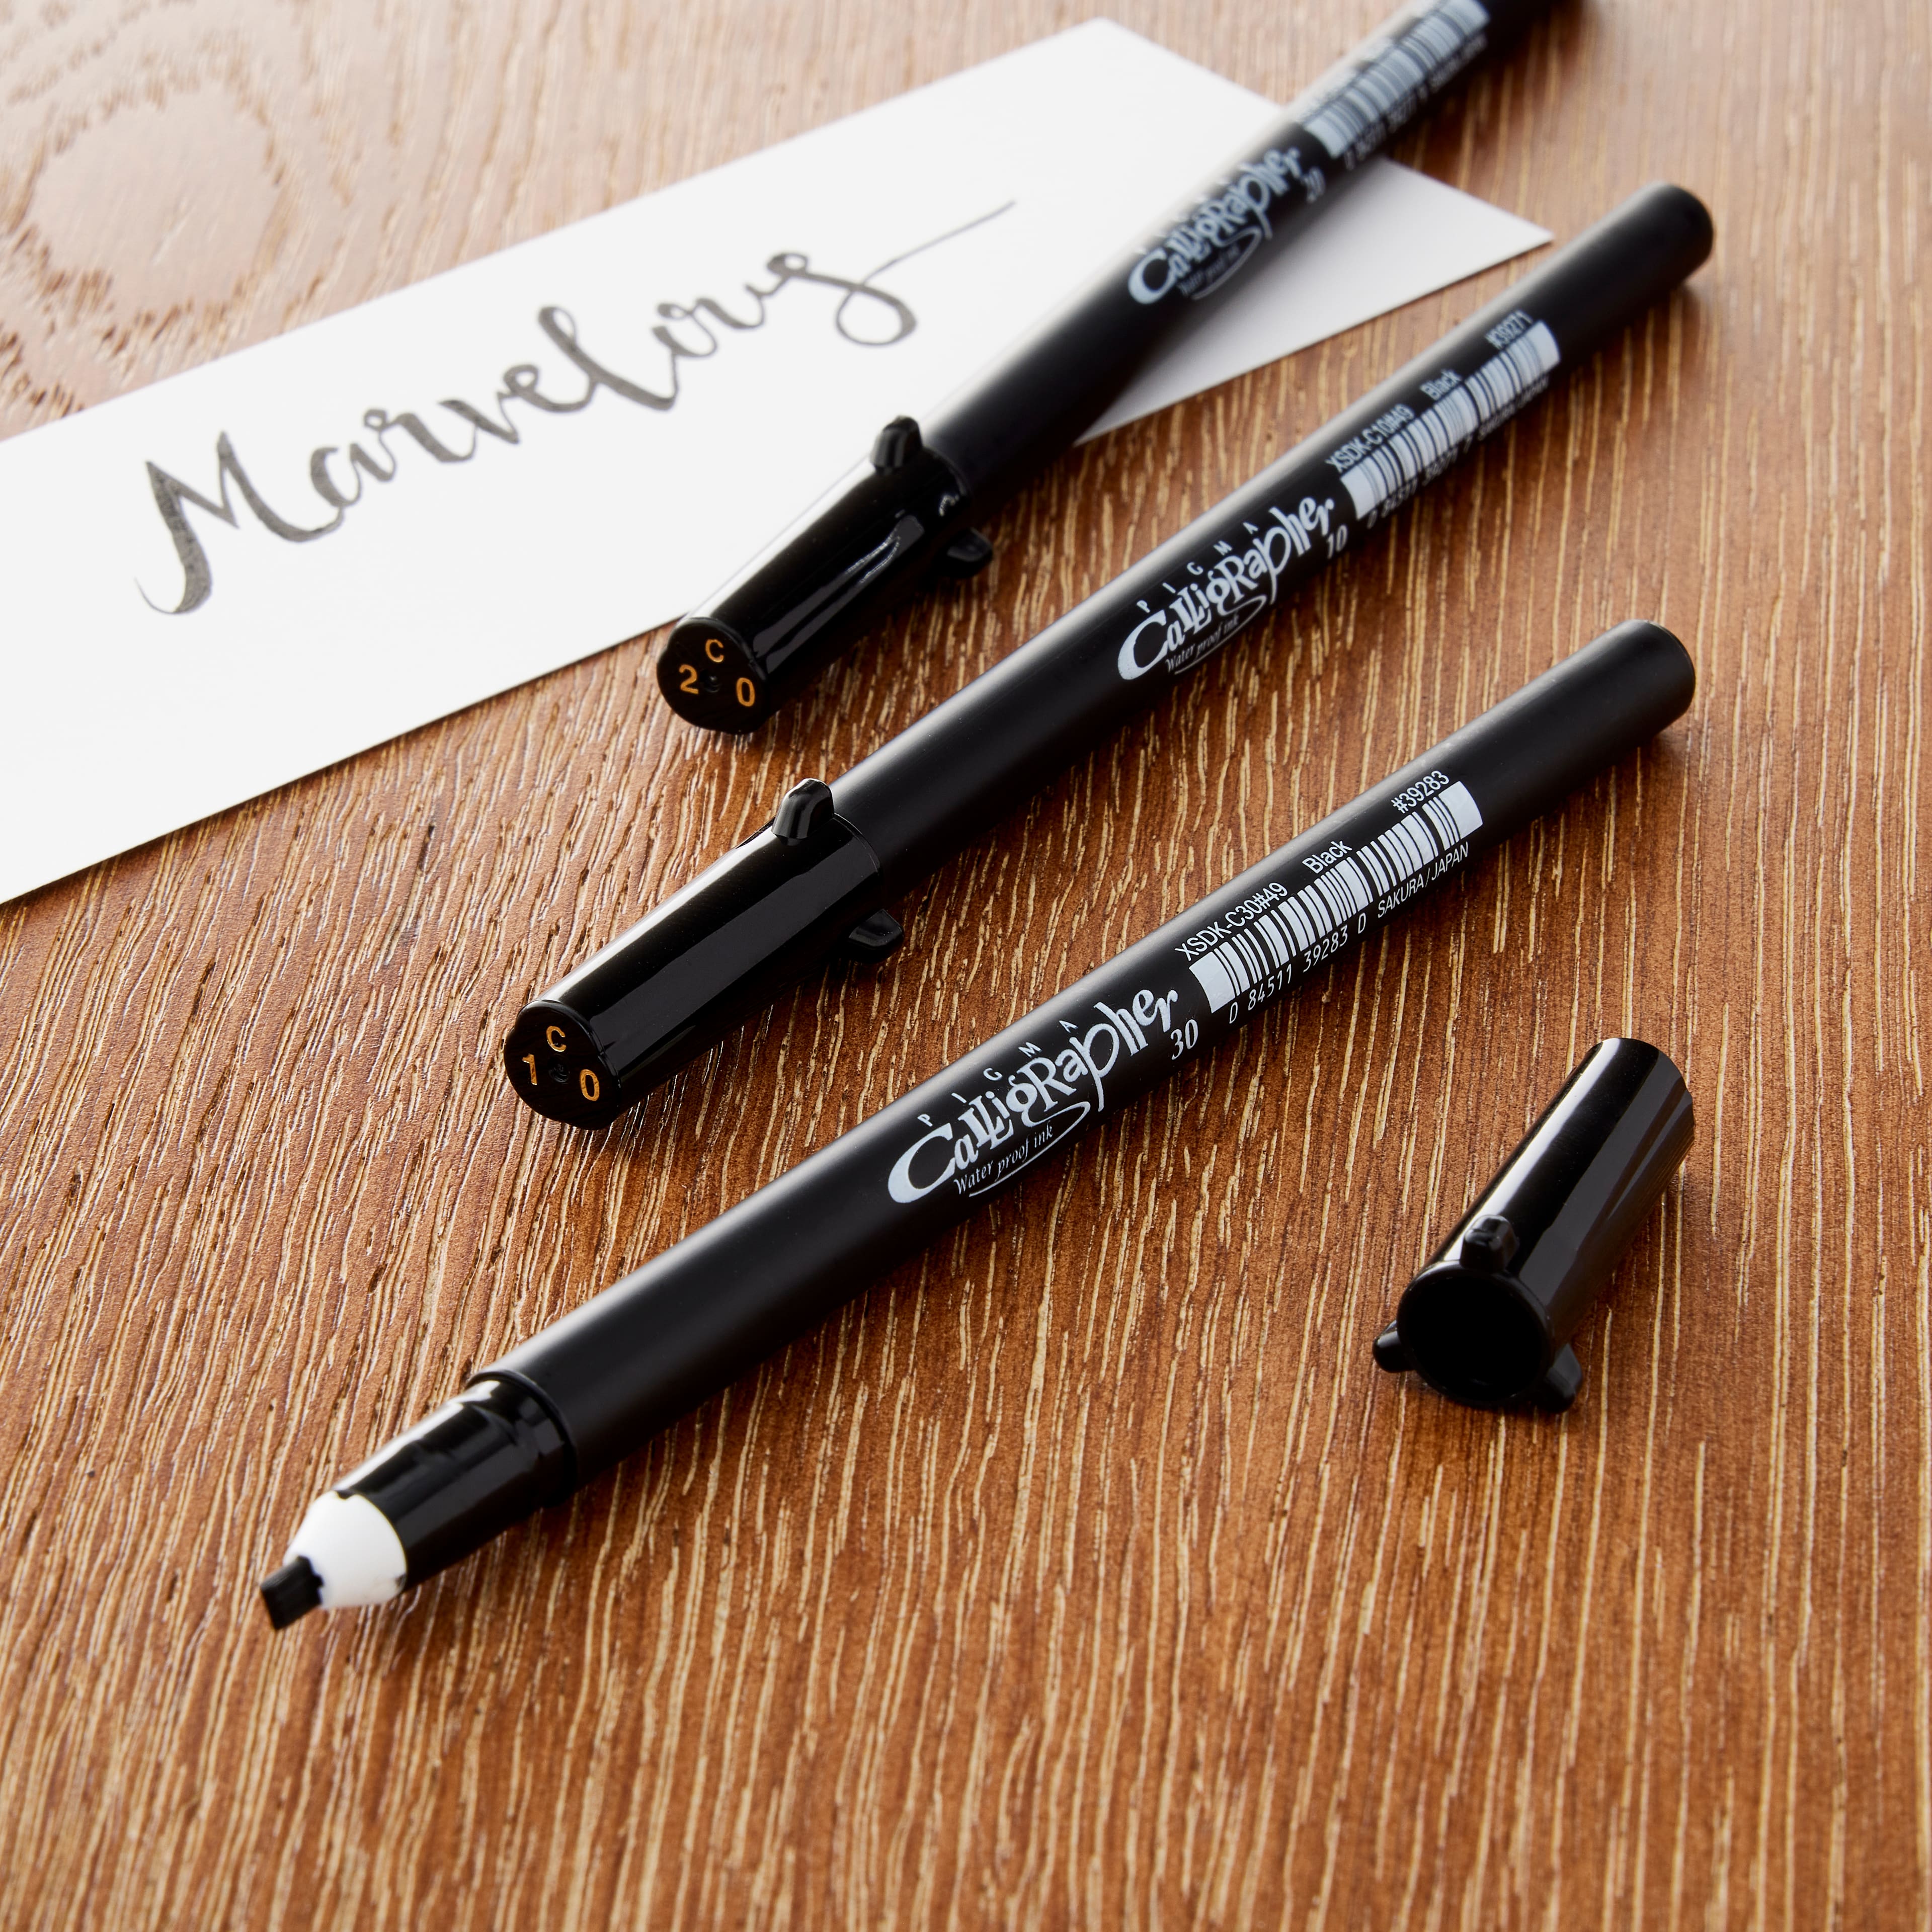 6 Packs: 3 ct. (18 total) Pigma&#xAE; Calligrapher&#x2122; Black Pen Set